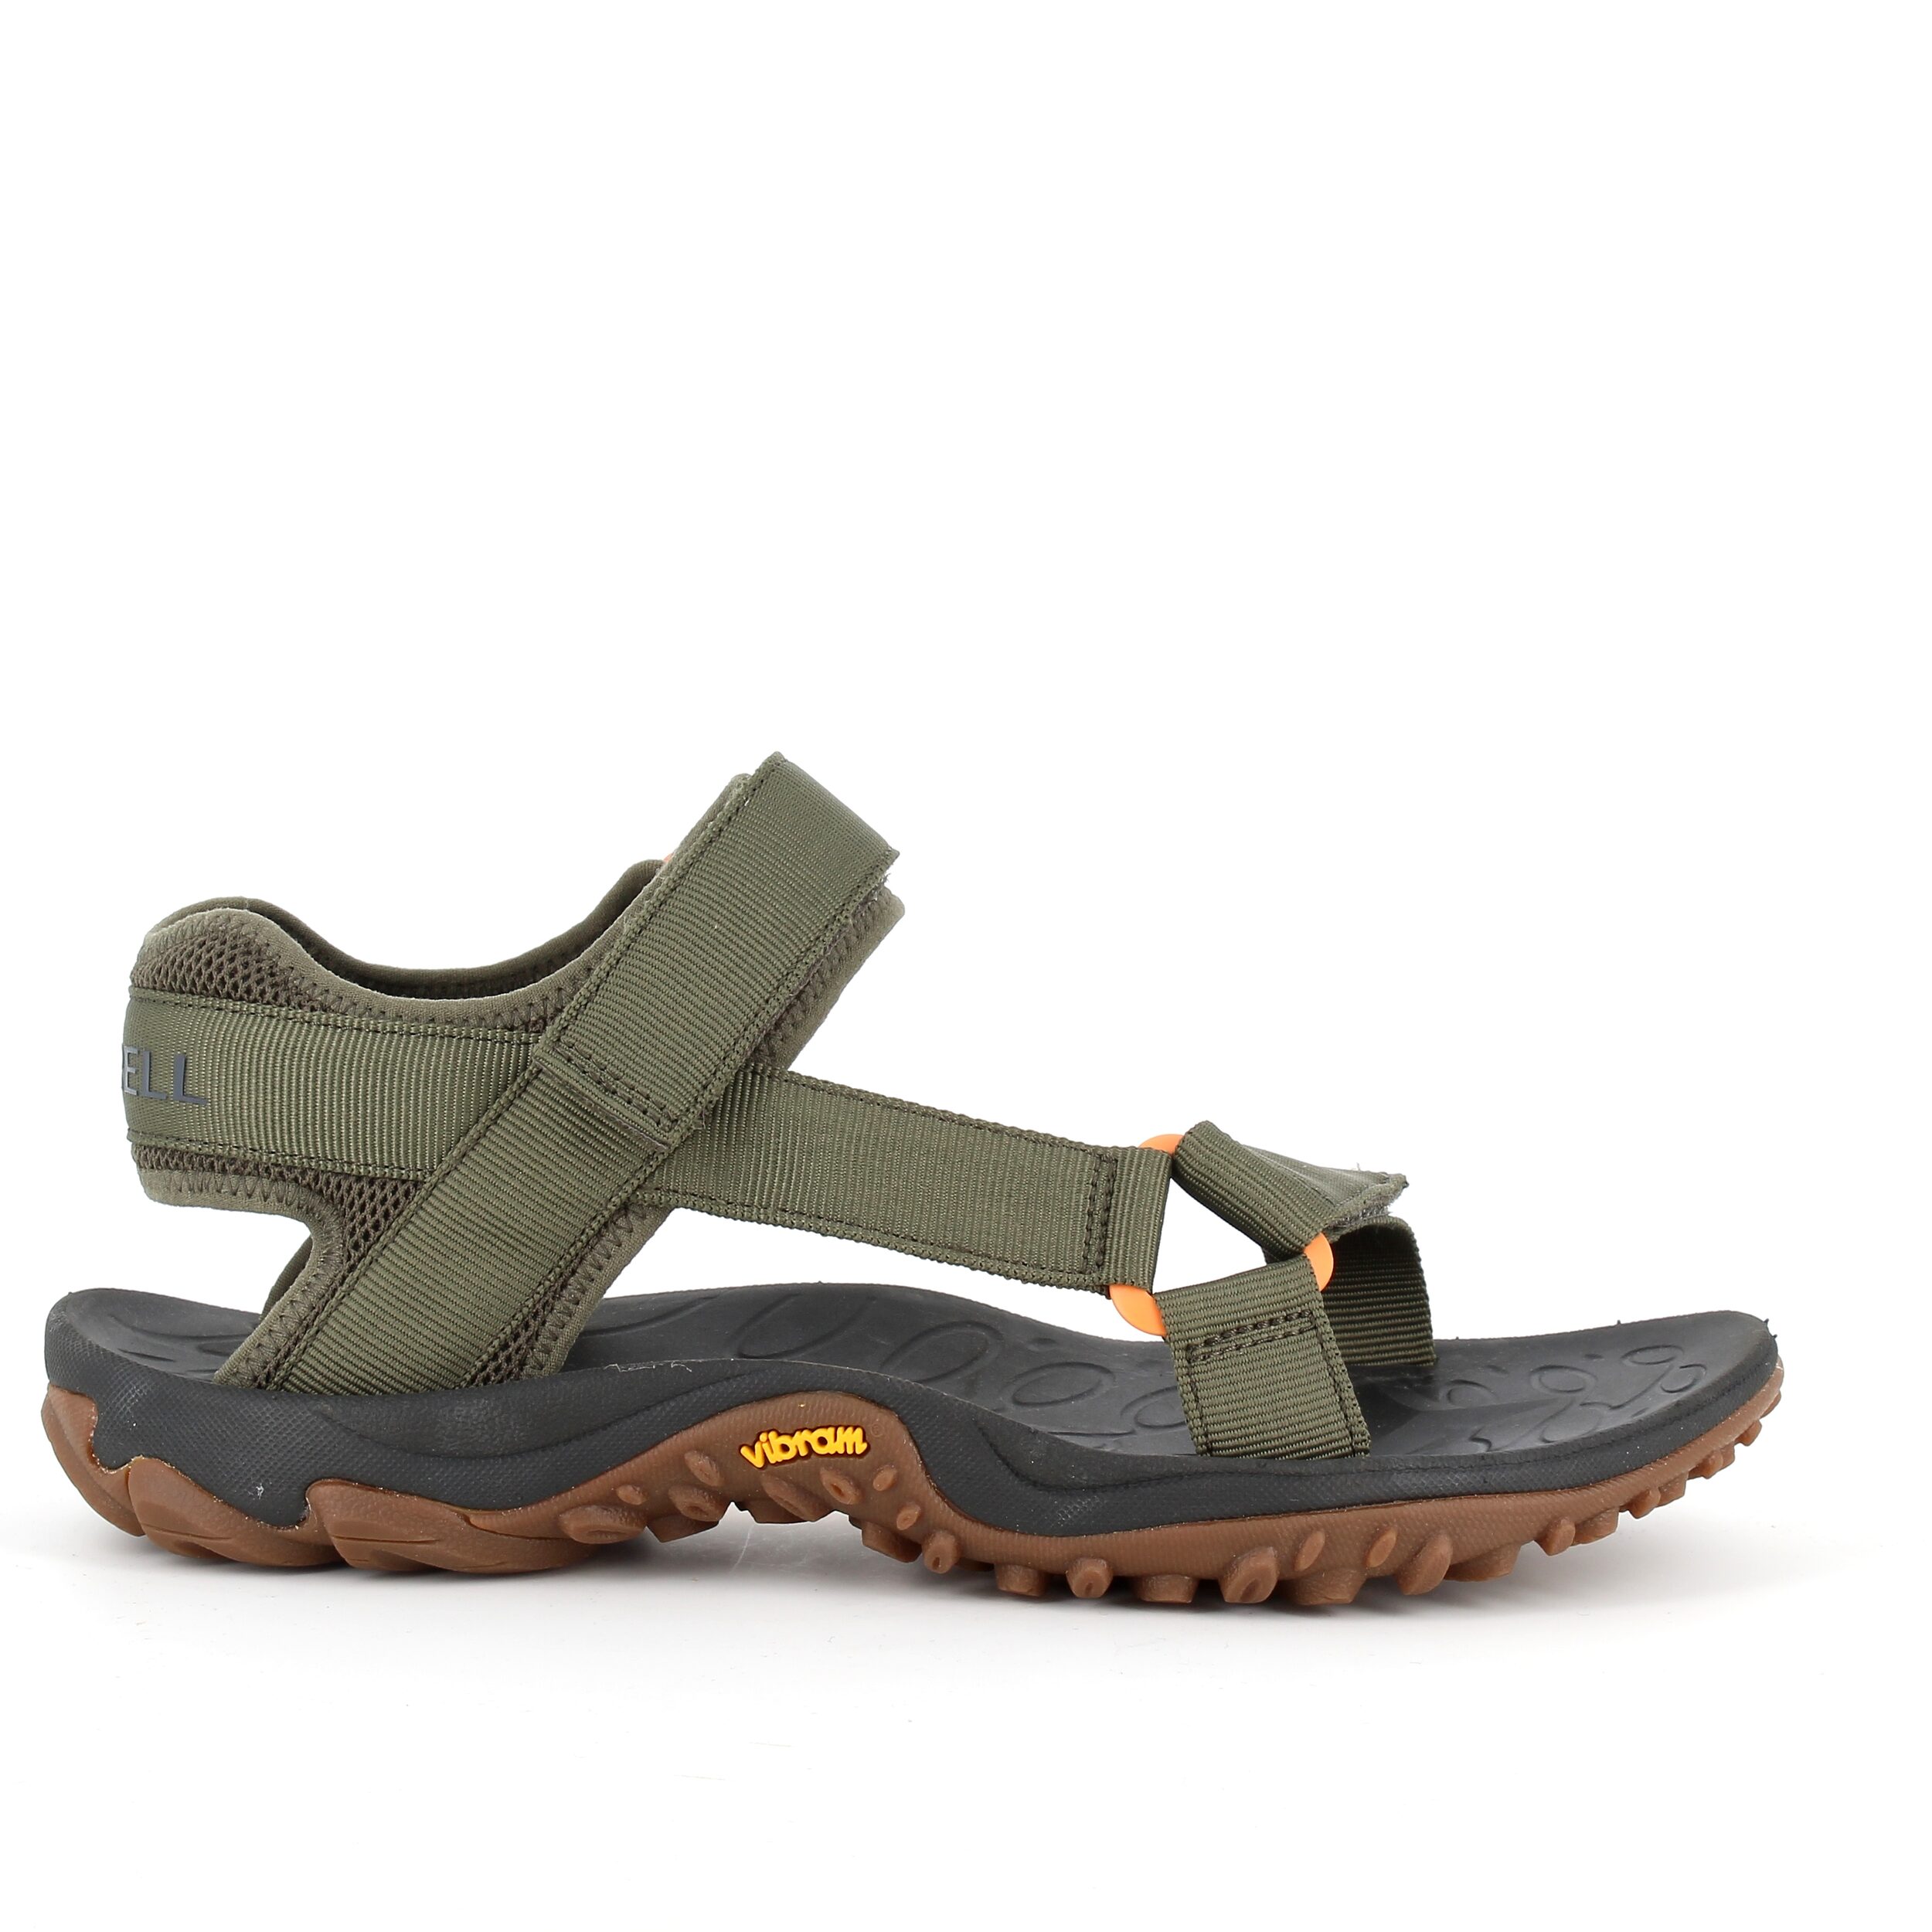 #3 - Grøn sandal fra Merrell med fleksibel gummi bund - 46